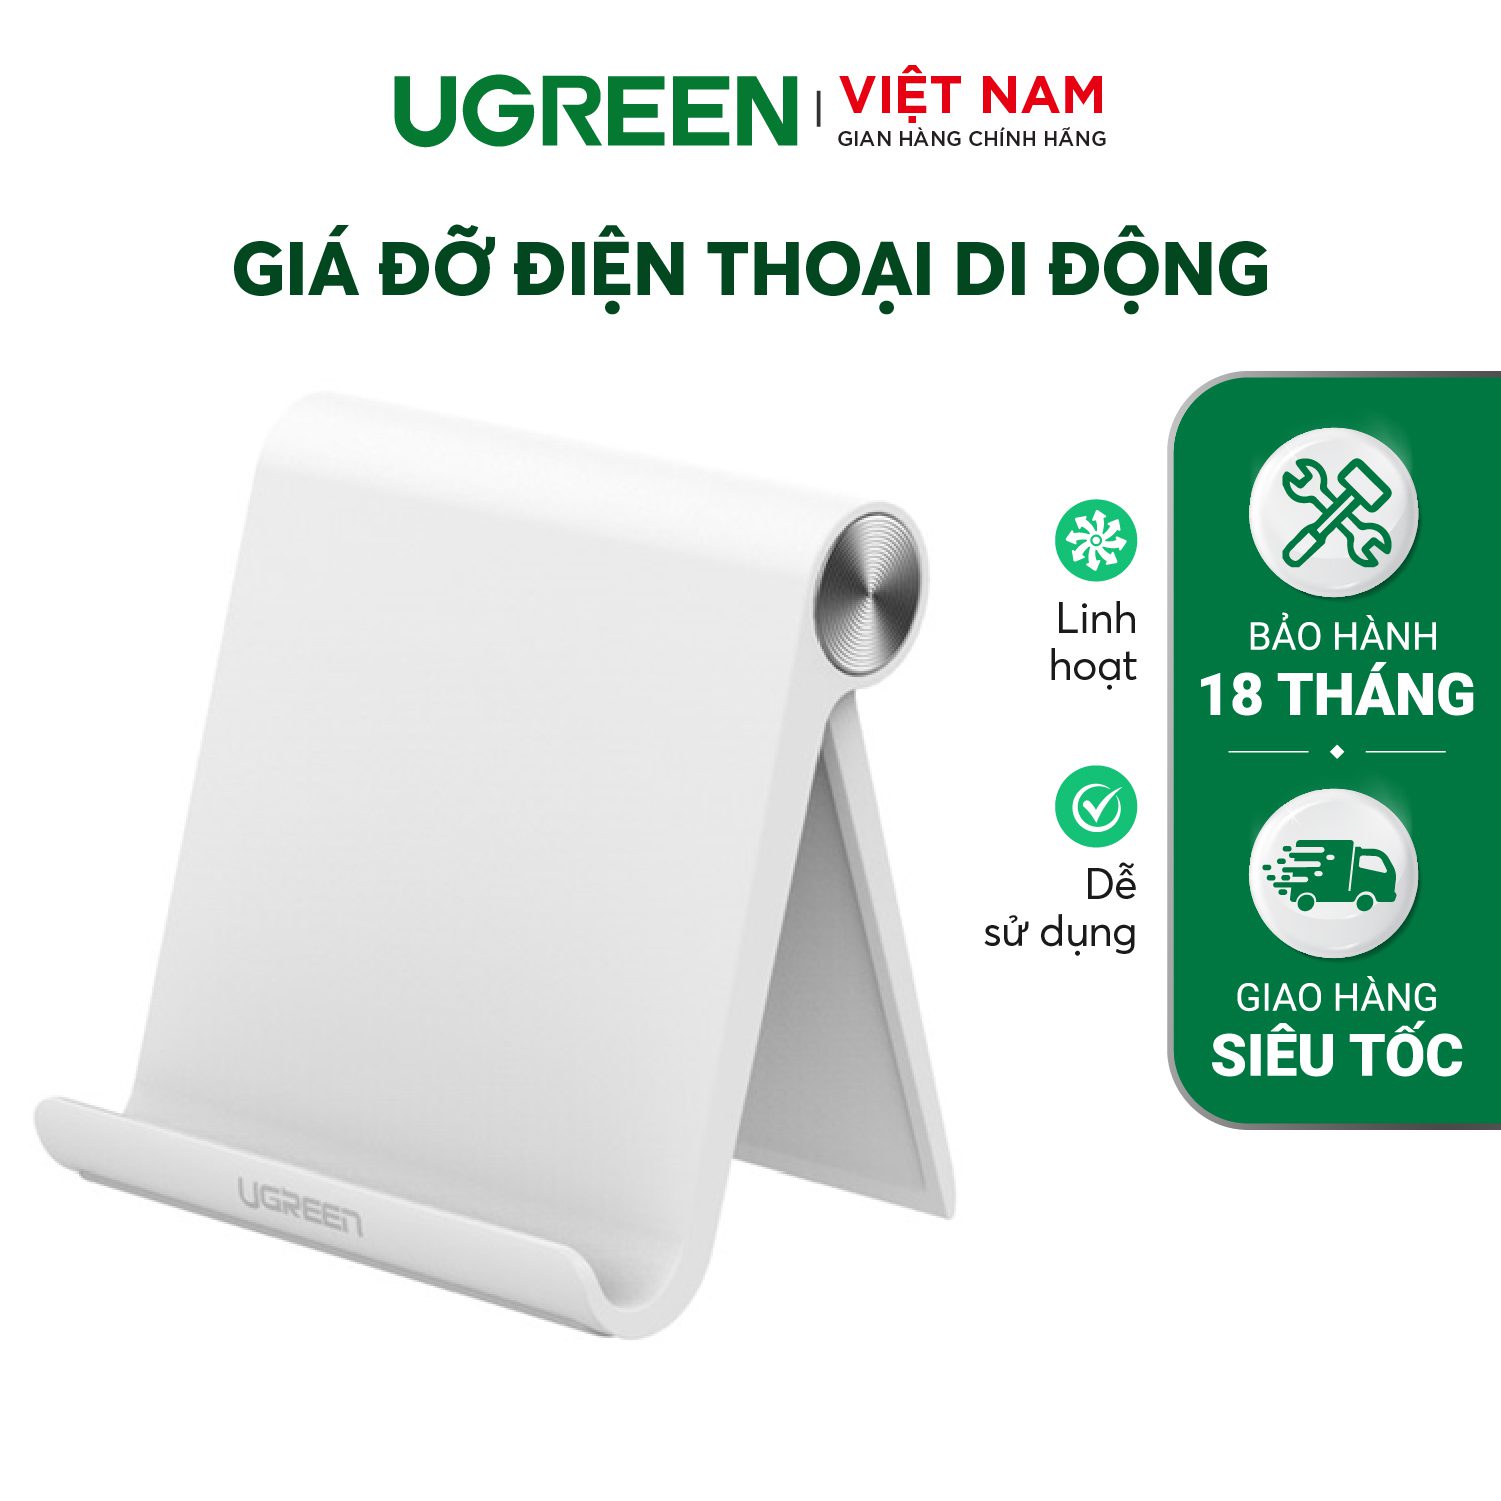 Giá đỡ Điện thoại/Máy tính bảng năng động cho iPhone 11 Pro Max XS XR 8 Plus 6 7 5 Samsung Galaxy S10 S9 S8 S7 Edge S6... UGREEN LP106 30285 – Ugreen Việt Nam